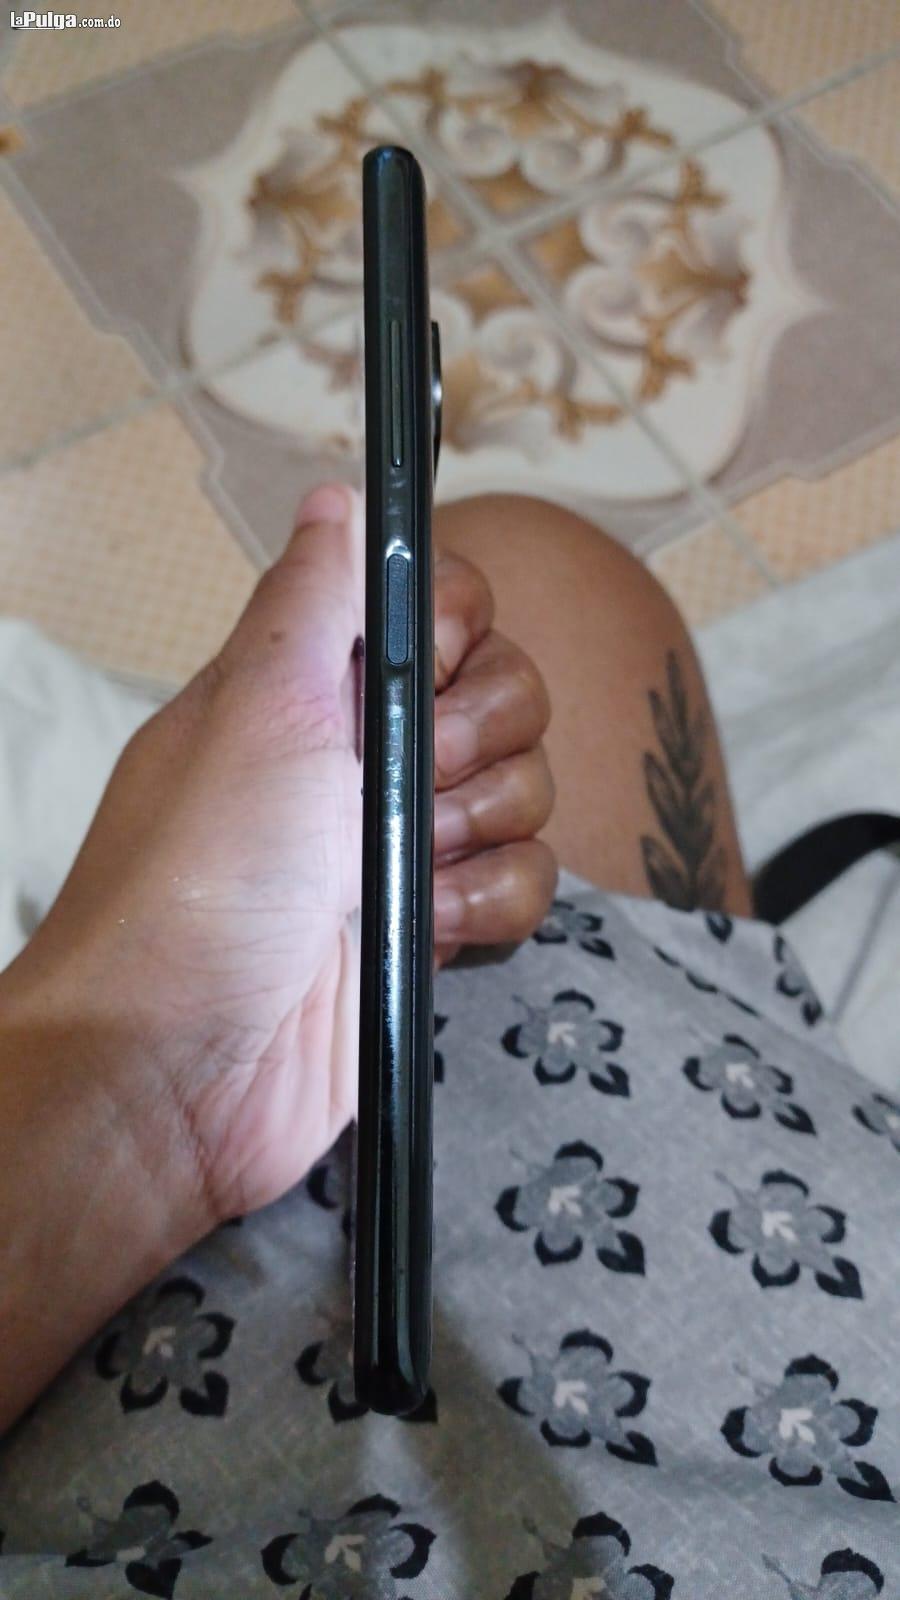 Xiaomi de 128g poco X3 en muy buenas condiciones  Foto 7133047-1.jpg